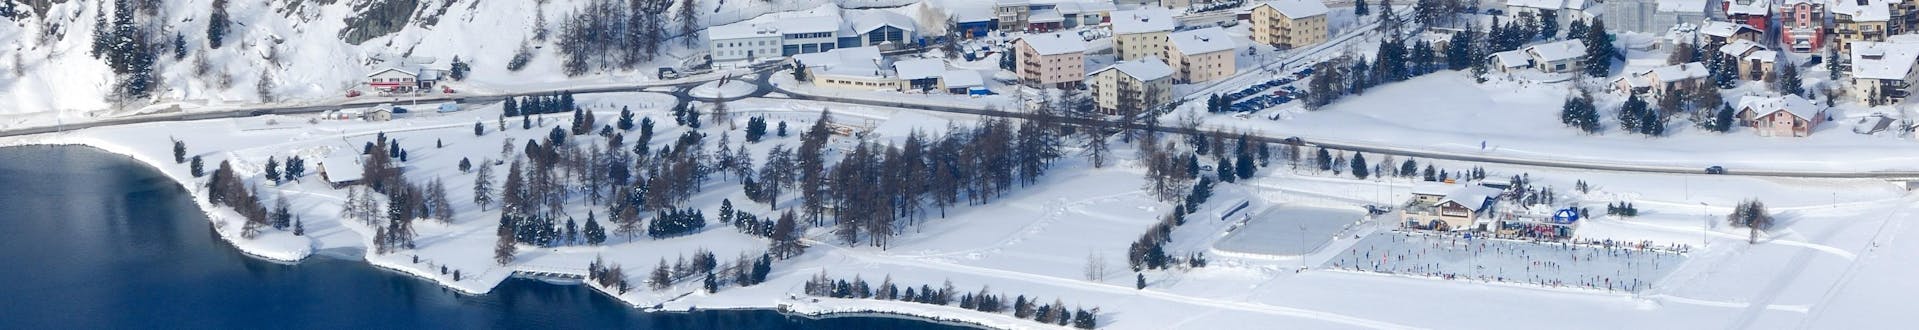 Eine schneebedeckte Stadt am See in Corvatsch-Silvaplana in der Schweiz.